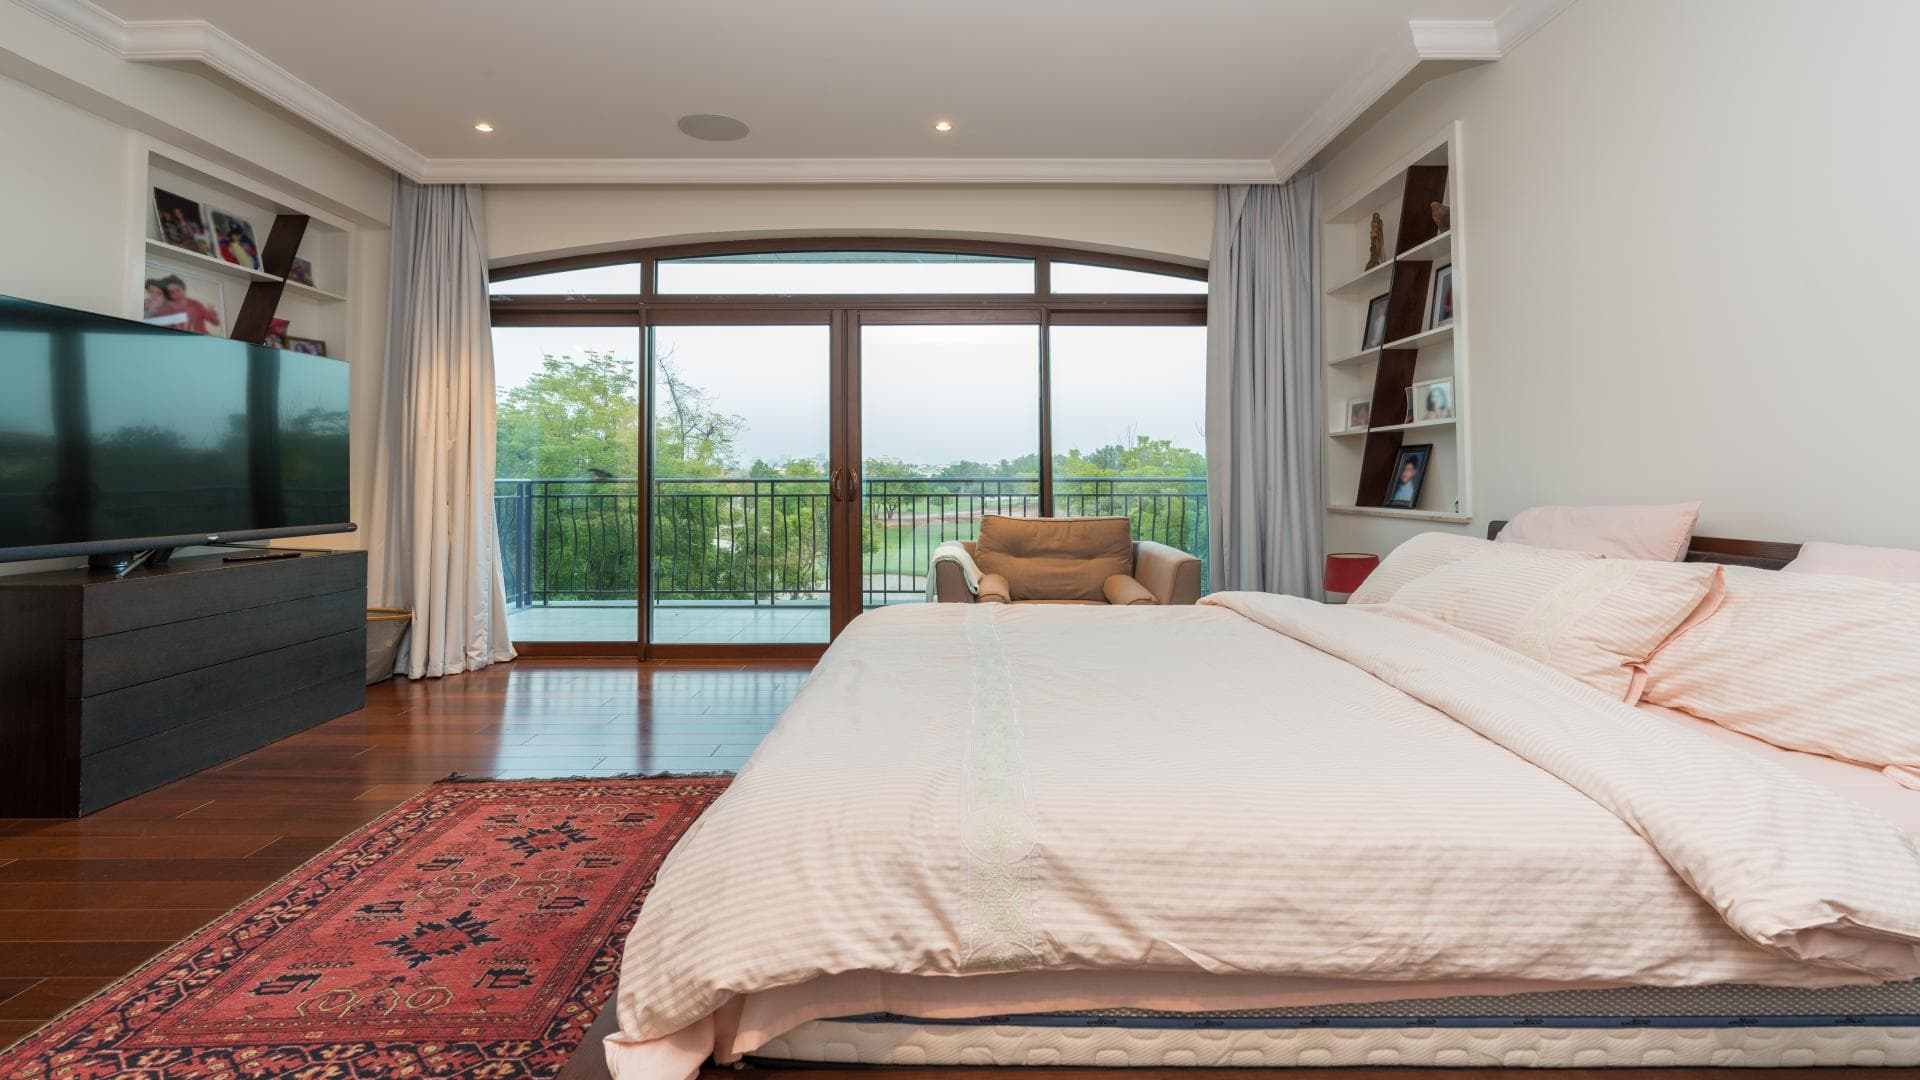 5 Bedroom Villa For Rent Earth Lp19541 259d057d56c4ca00.jpg